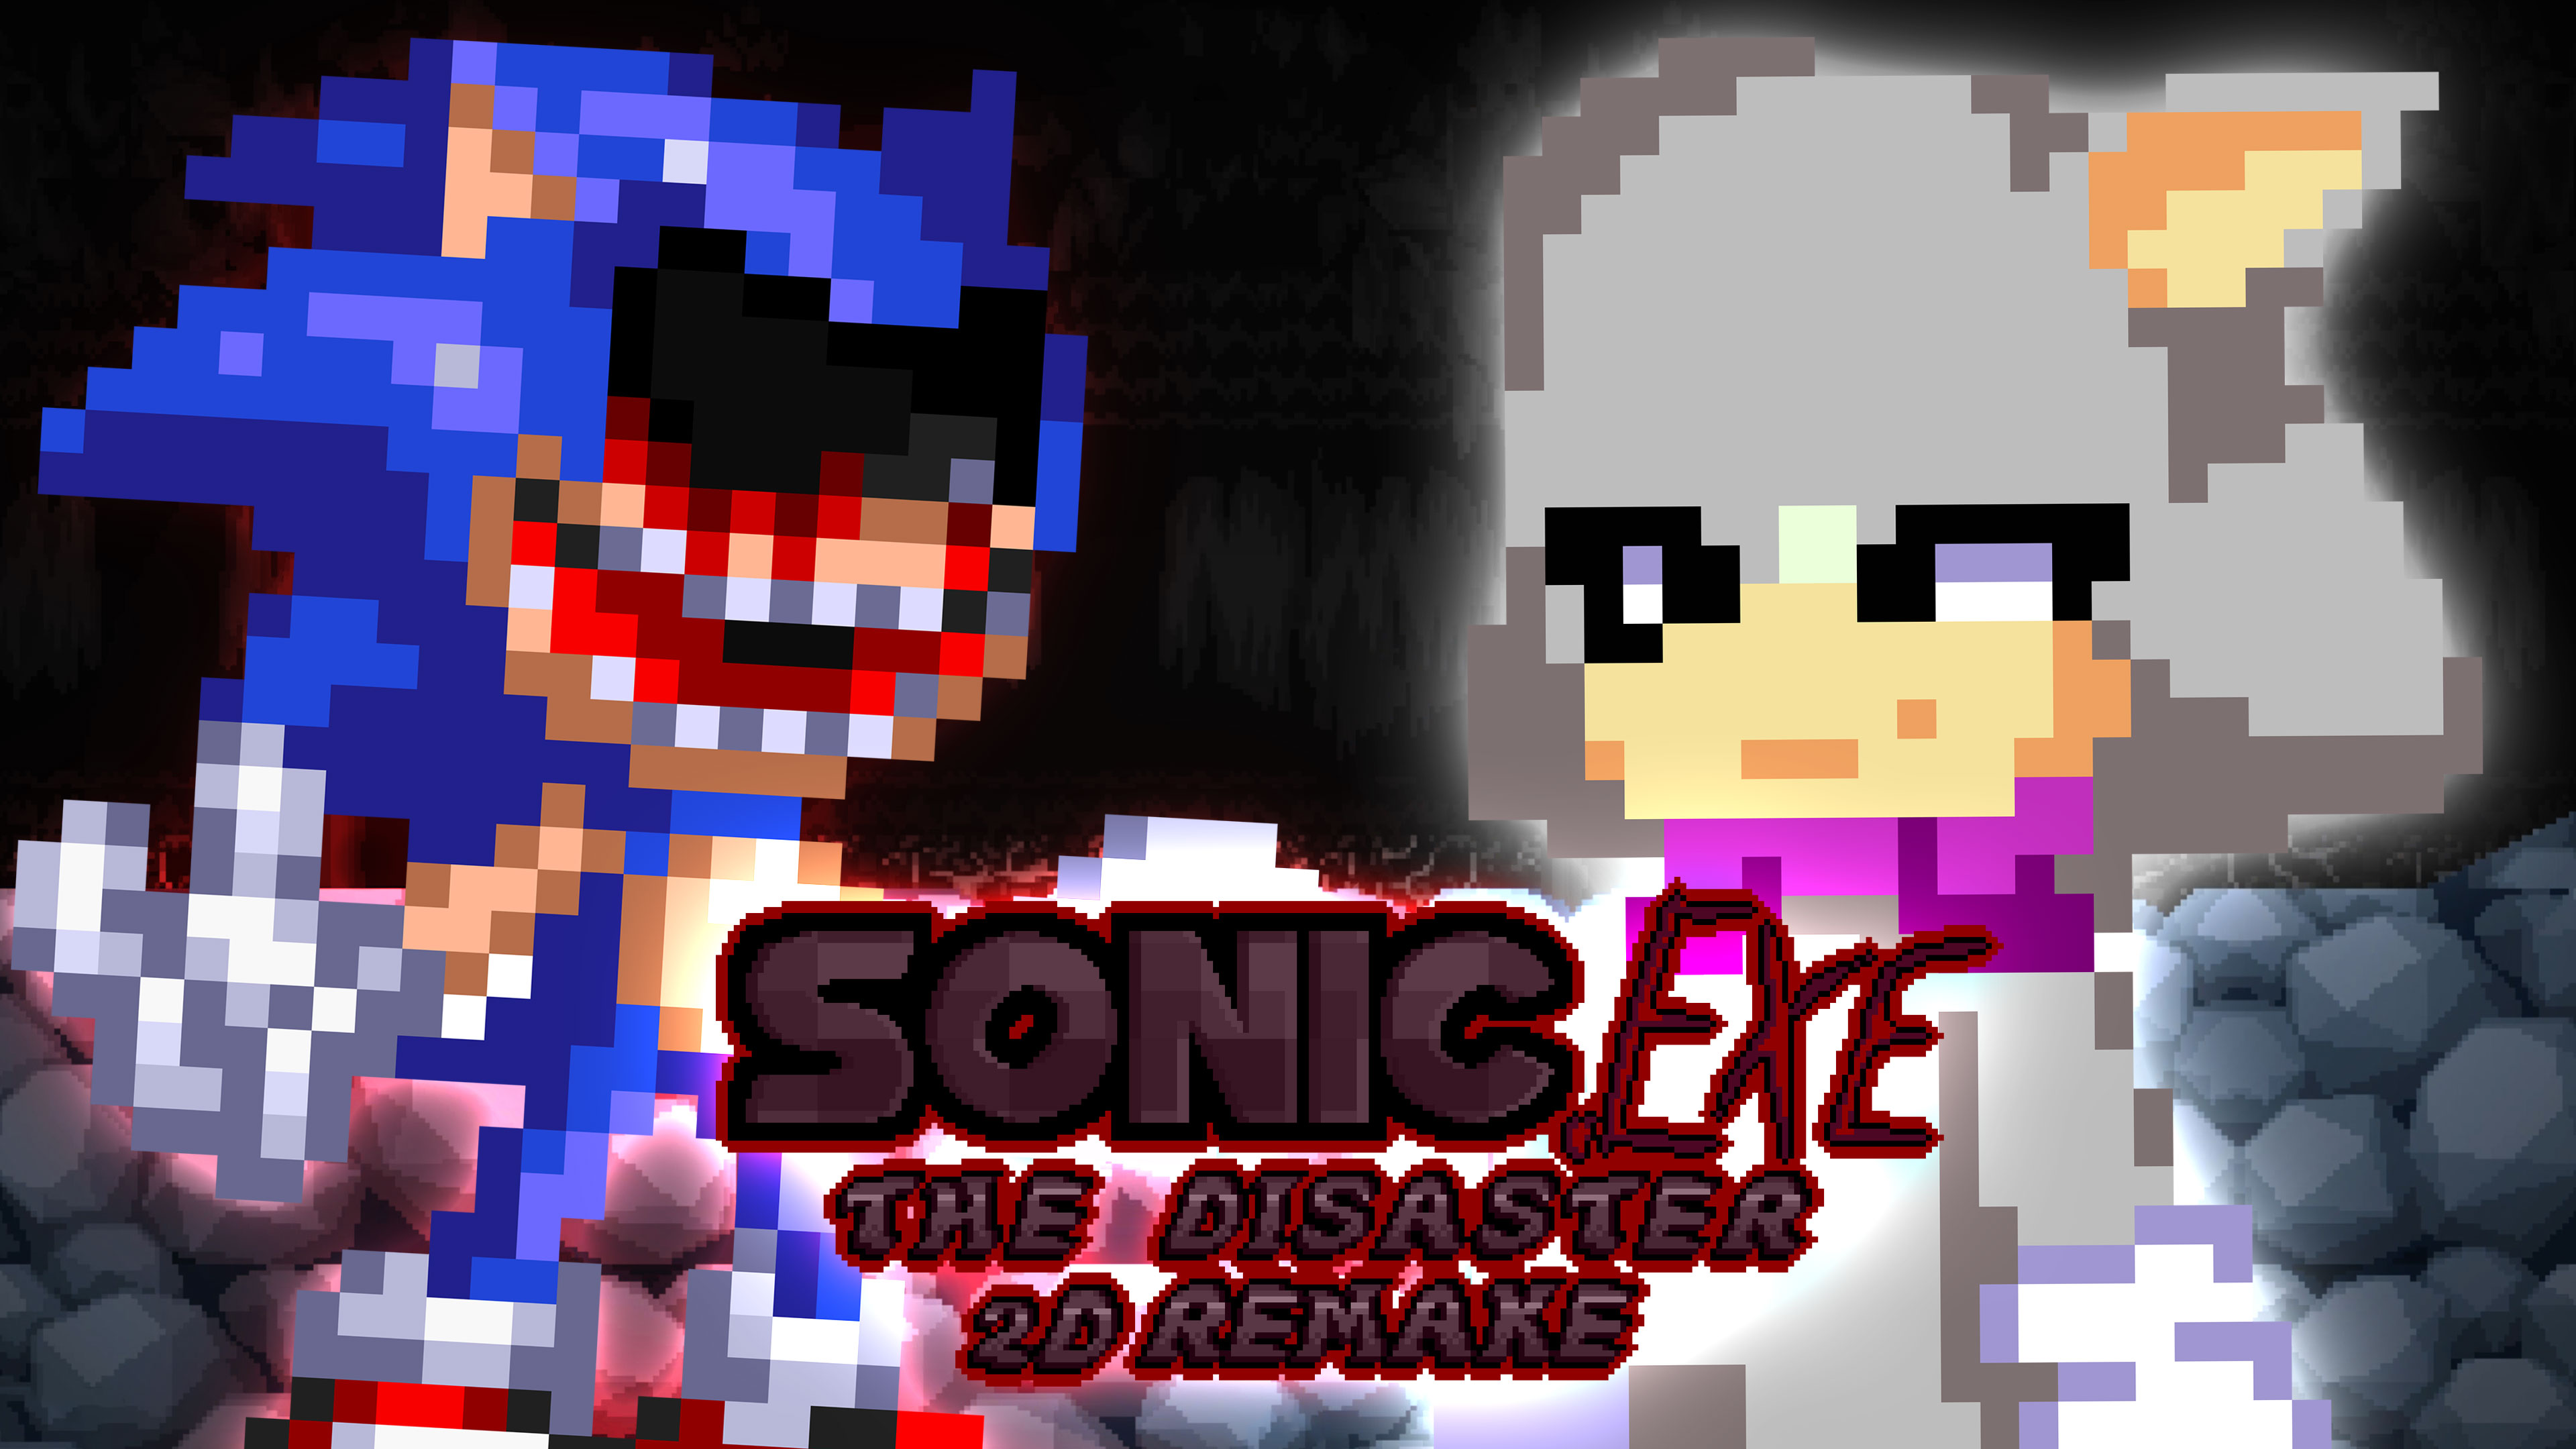 Sonic exe the disaster на андроиде. Sonic exe the Disaster. Sonic exe the Disaster 2d. Sonic.exe the Disaster 2d Remake.